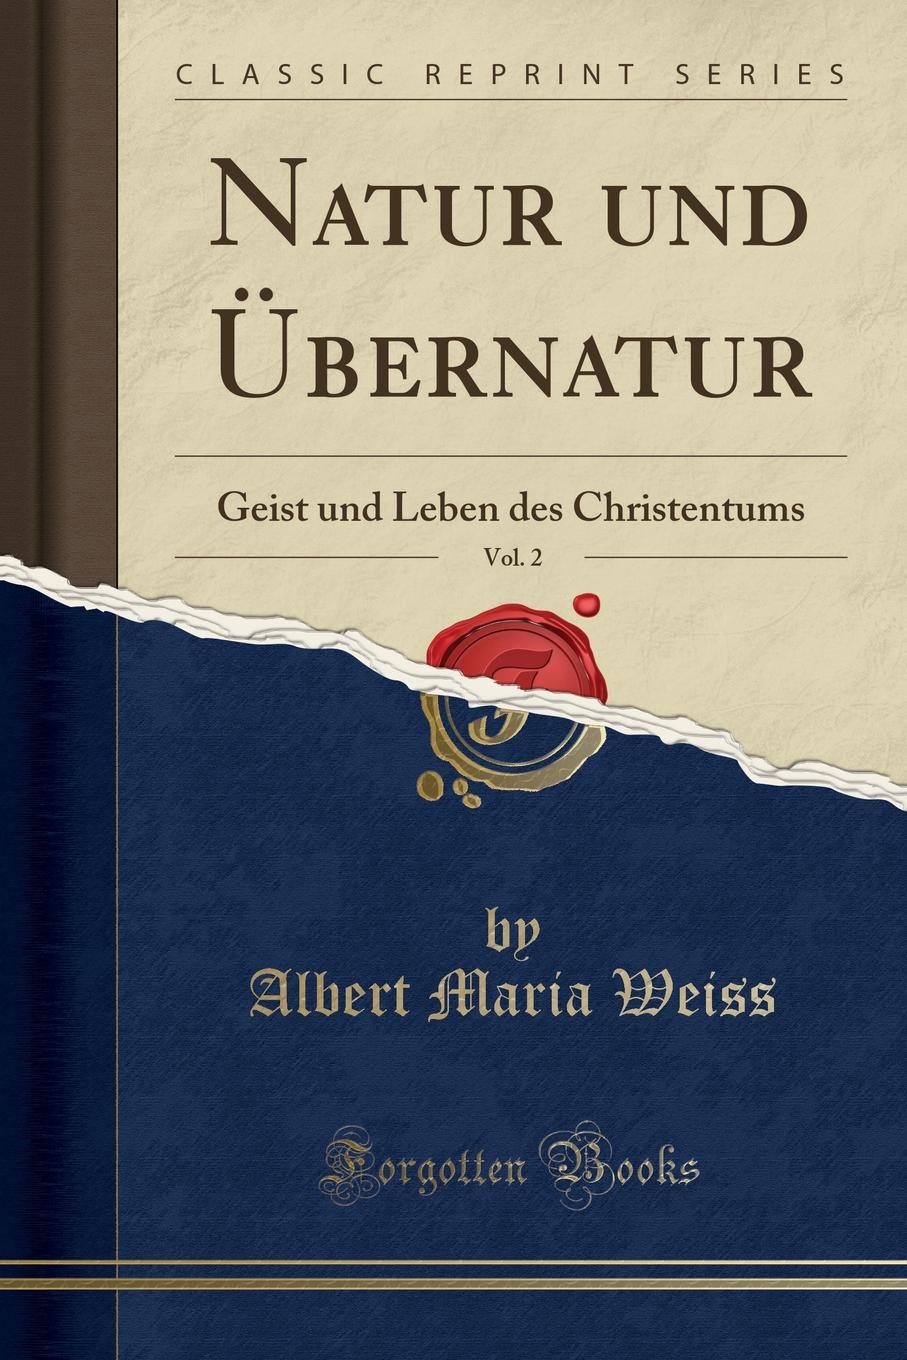 Natur und Ubernatur, Vol. 2. Geist und Leben des Christentums (Classic Reprint)